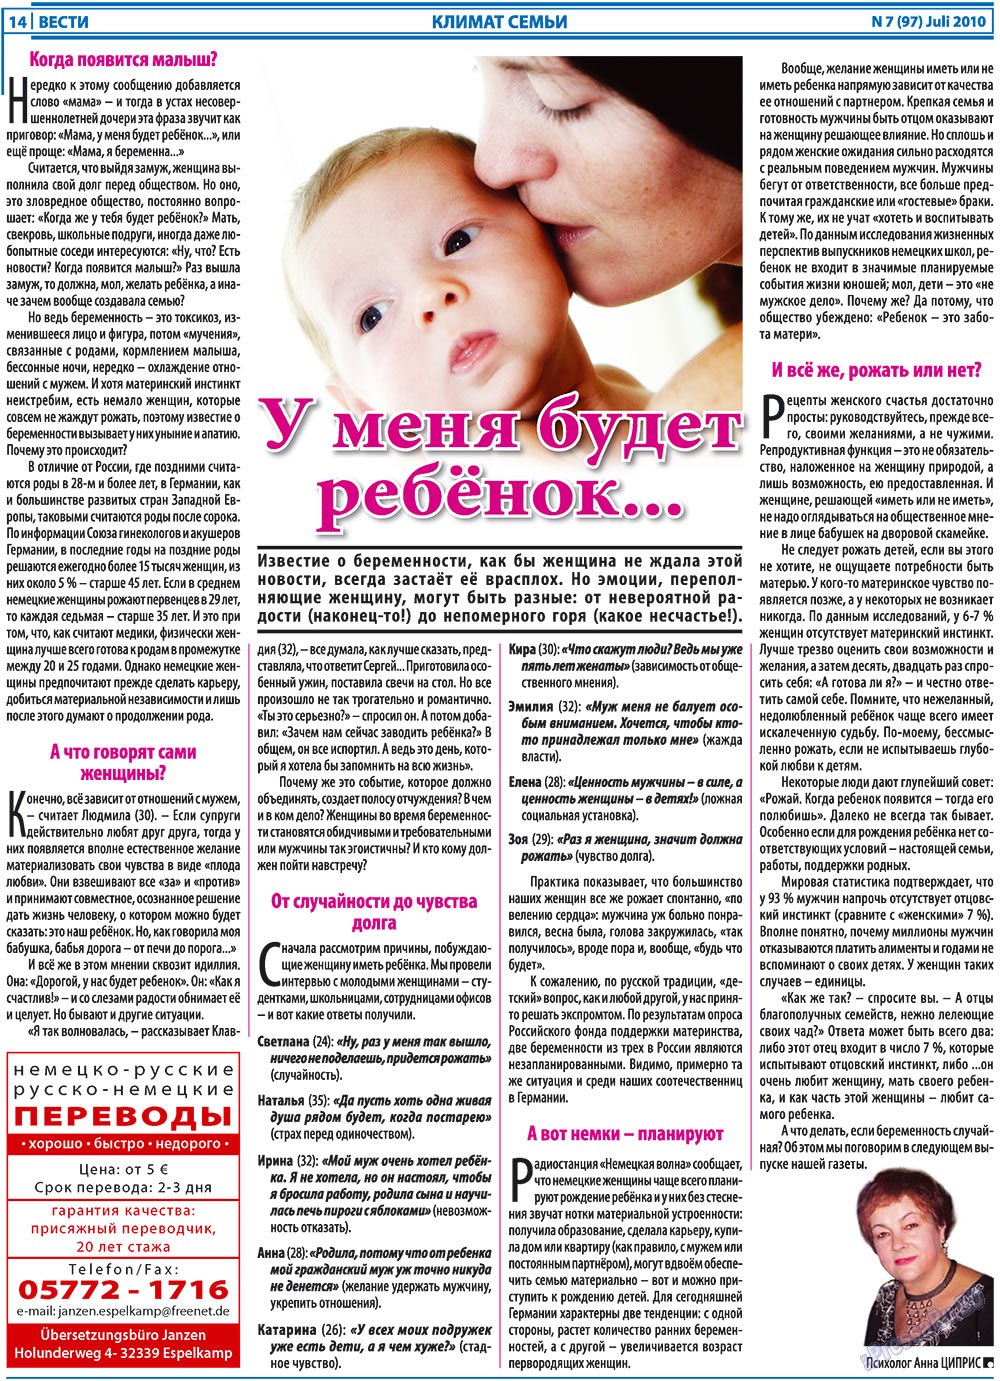 Вести, газета. 2010 №7 стр.14